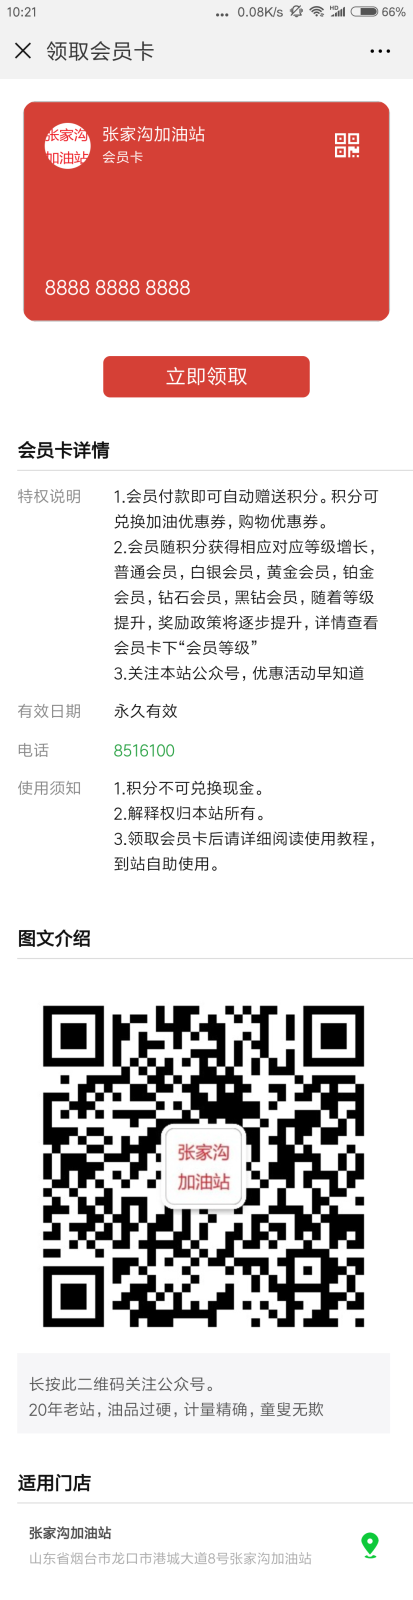 Screenshot_2018-08-23-10-21-12-770_com.tencent.mm.png